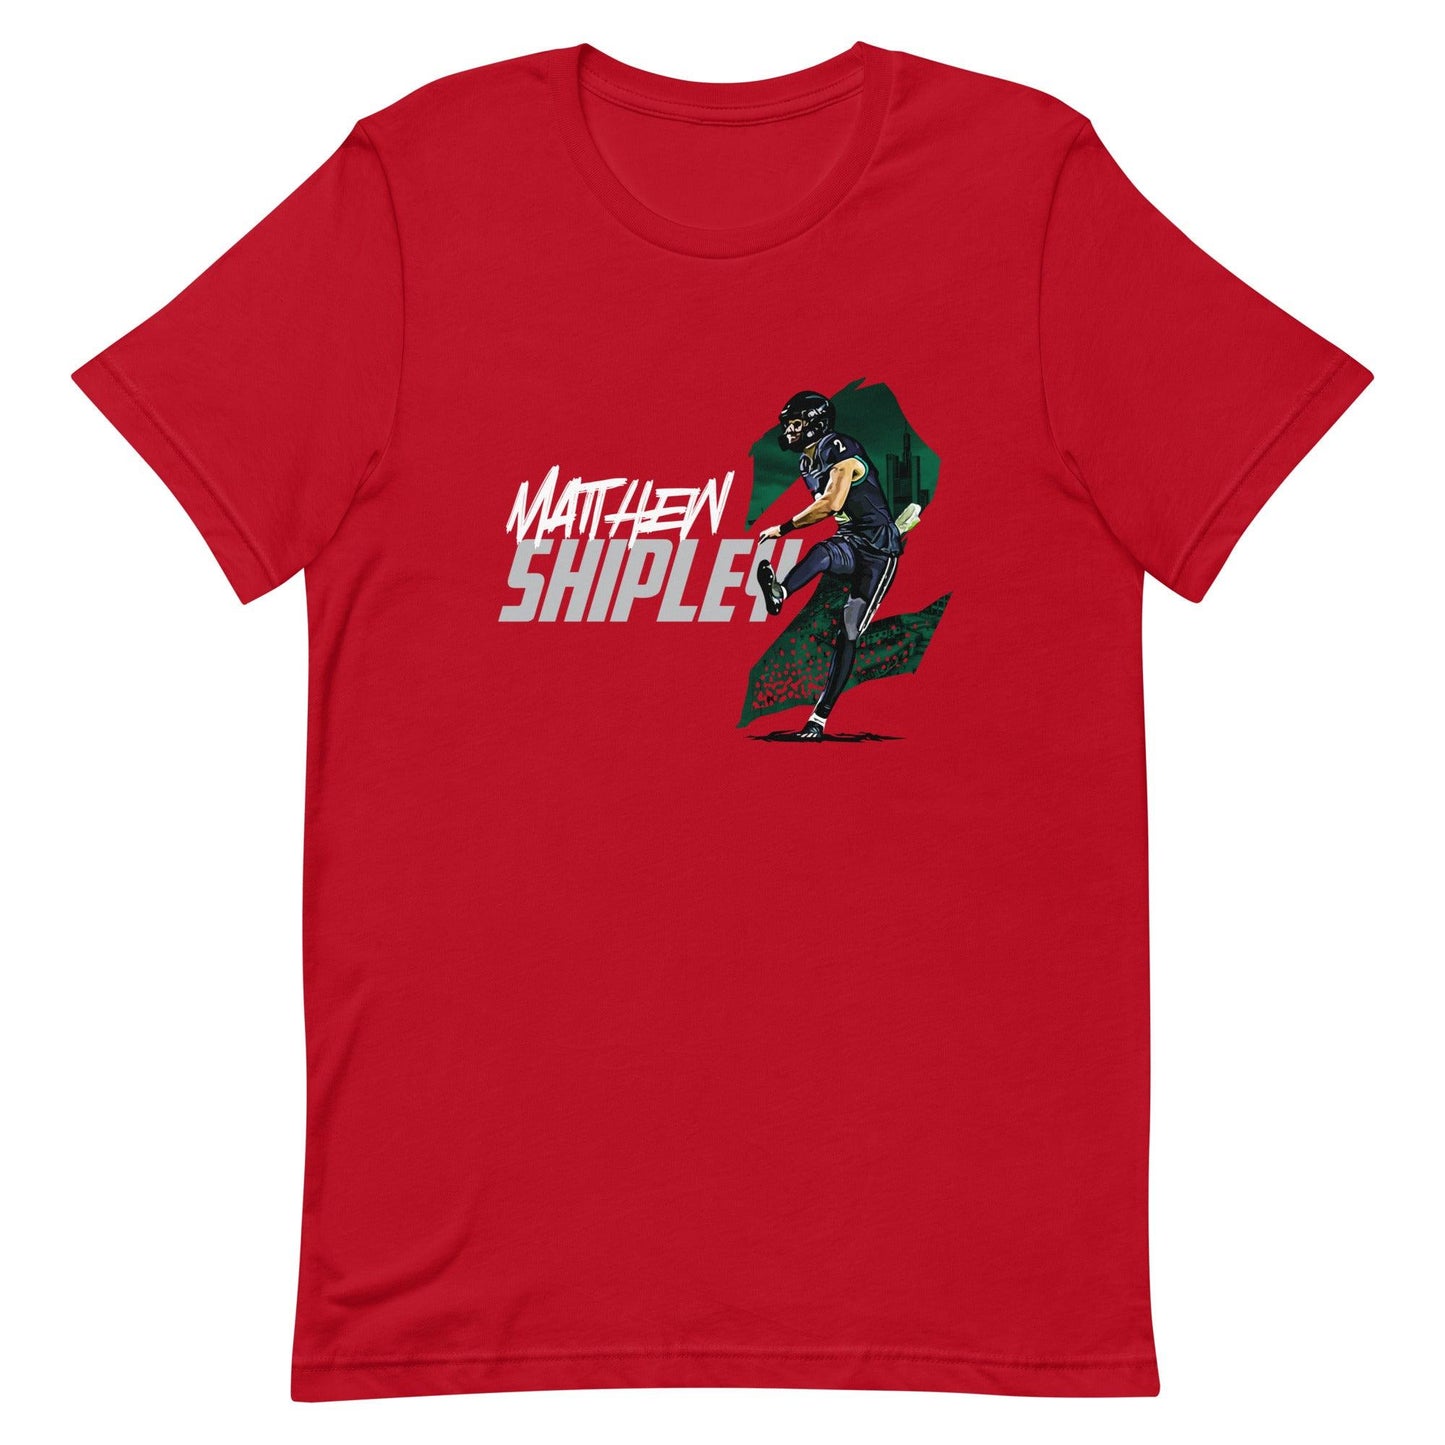 Matthew Shipley "Gameday" t-shirt - Fan Arch